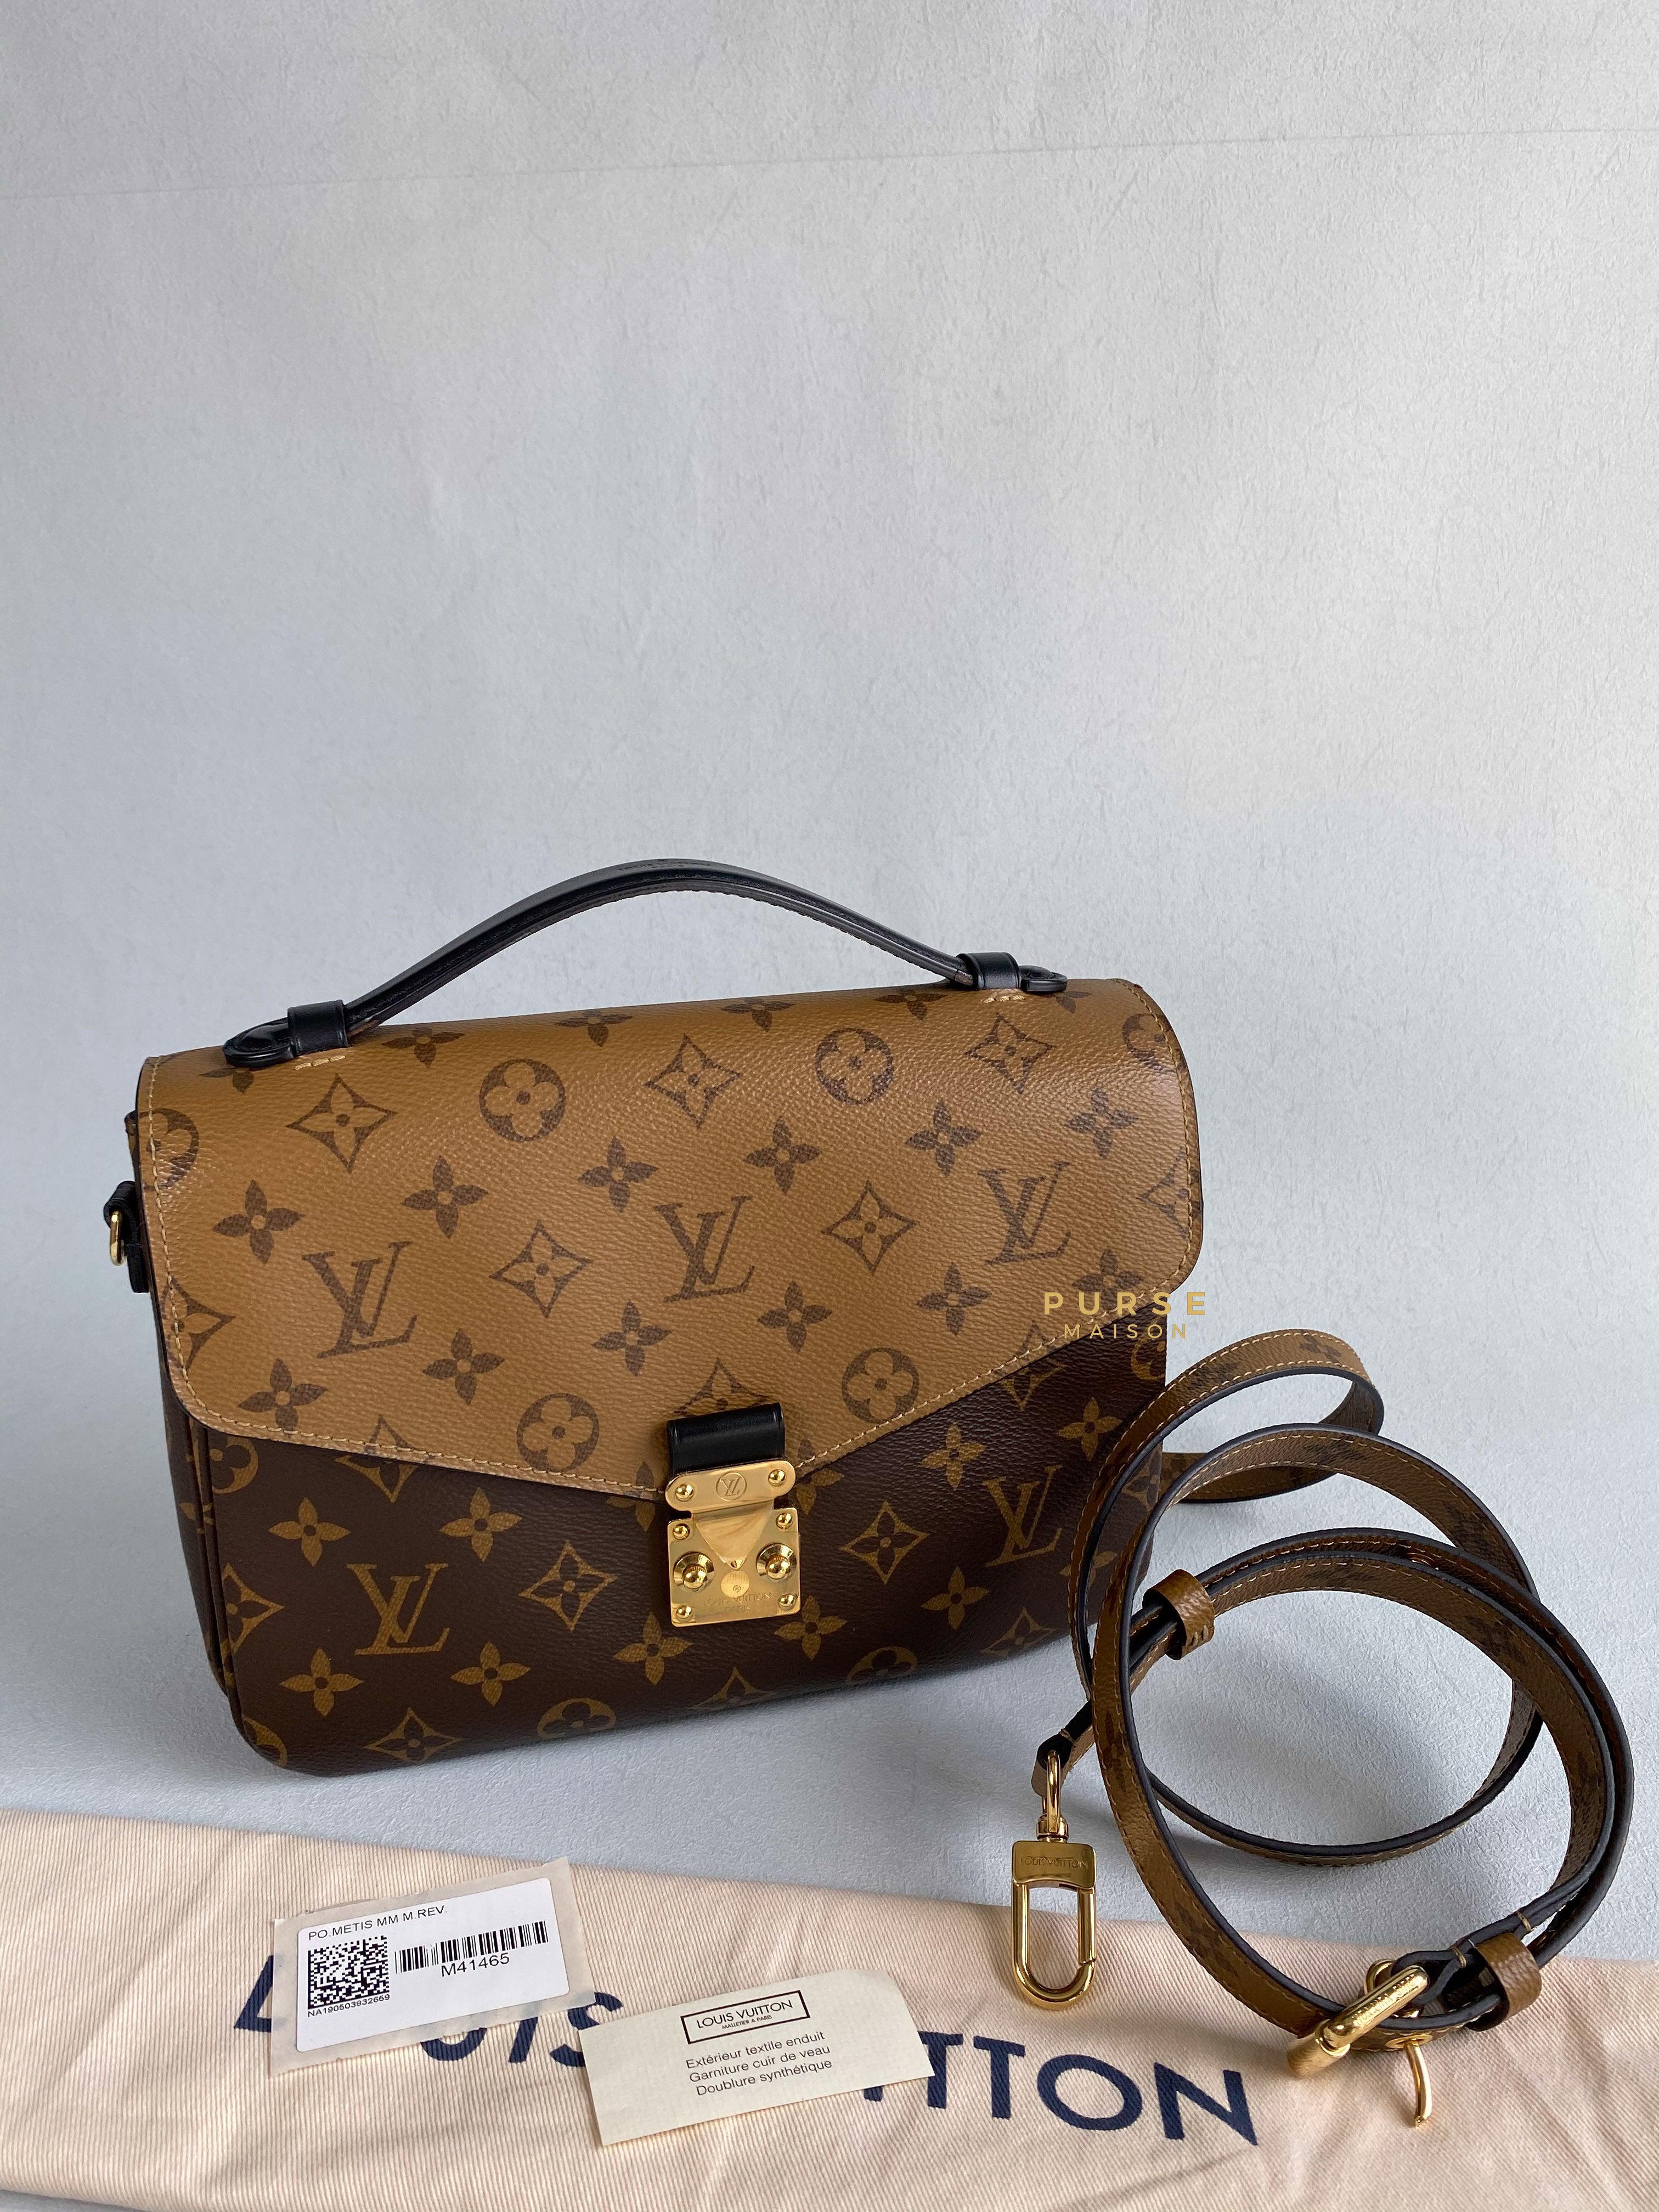 Louis Vuitton Pochette Metis in Reverse Monogram (Date code: DR1179) | Purse Maison Luxury Bags Shop